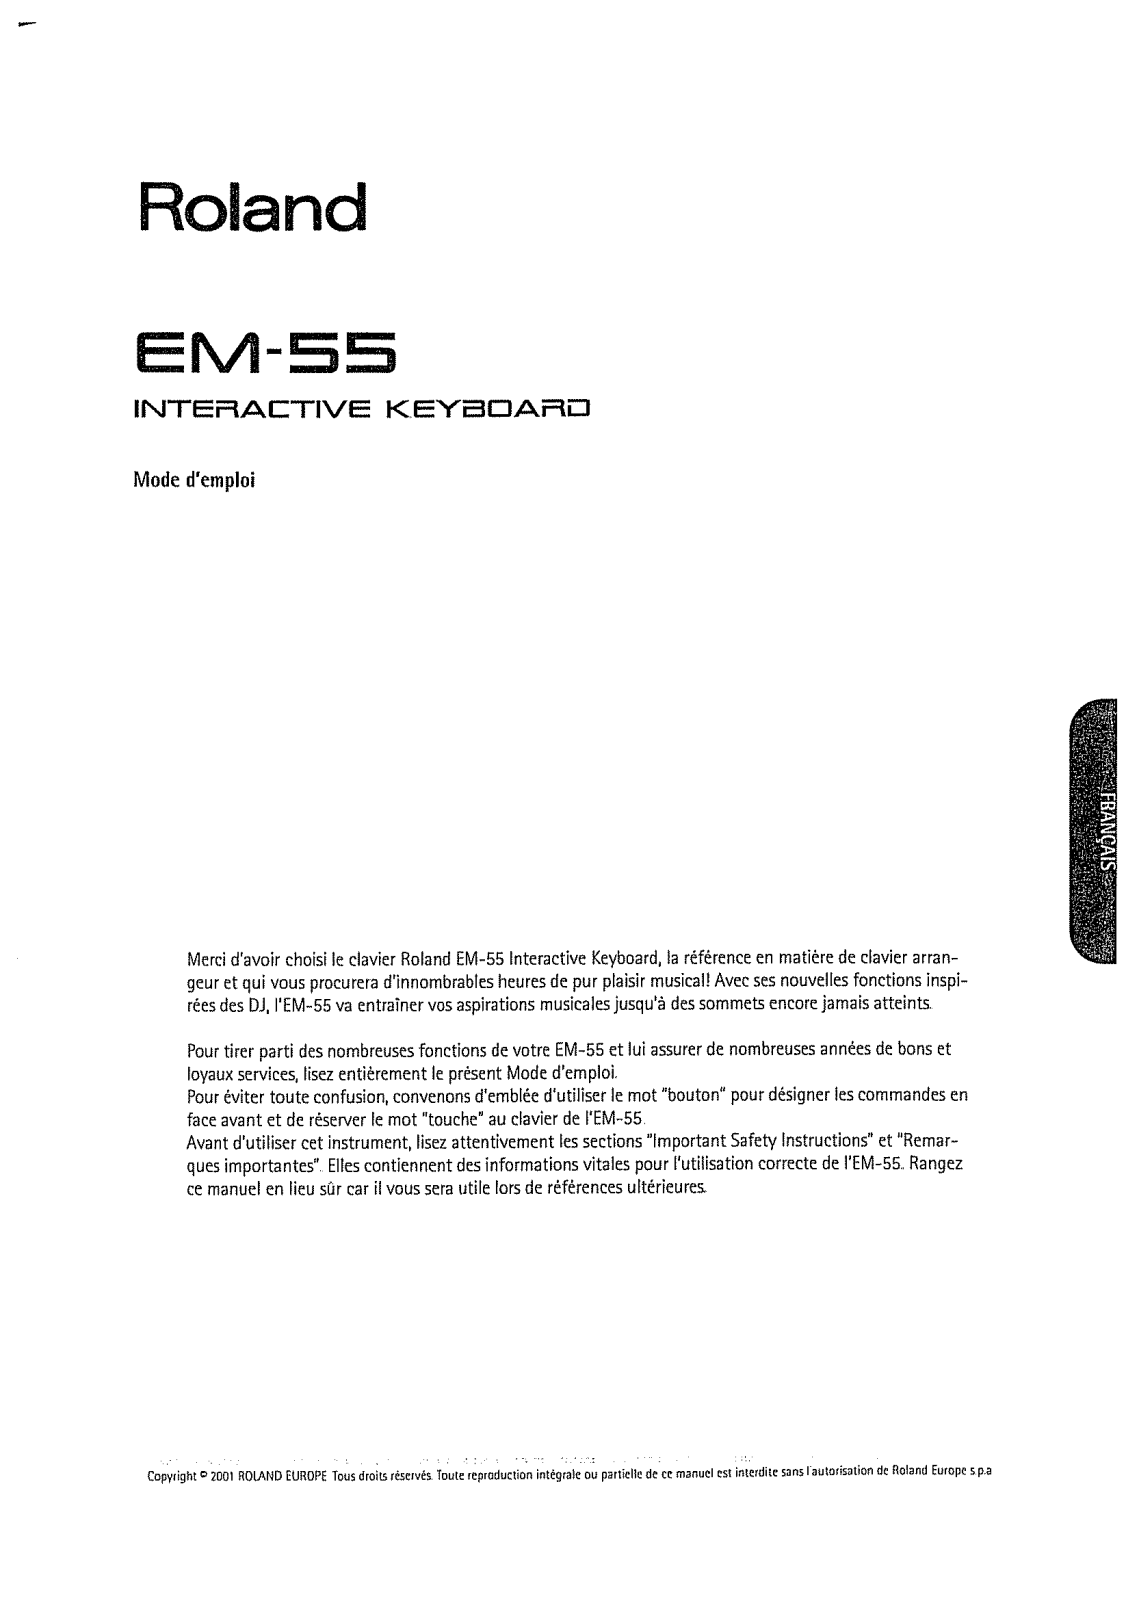 ROLAND EM-55 User Manual